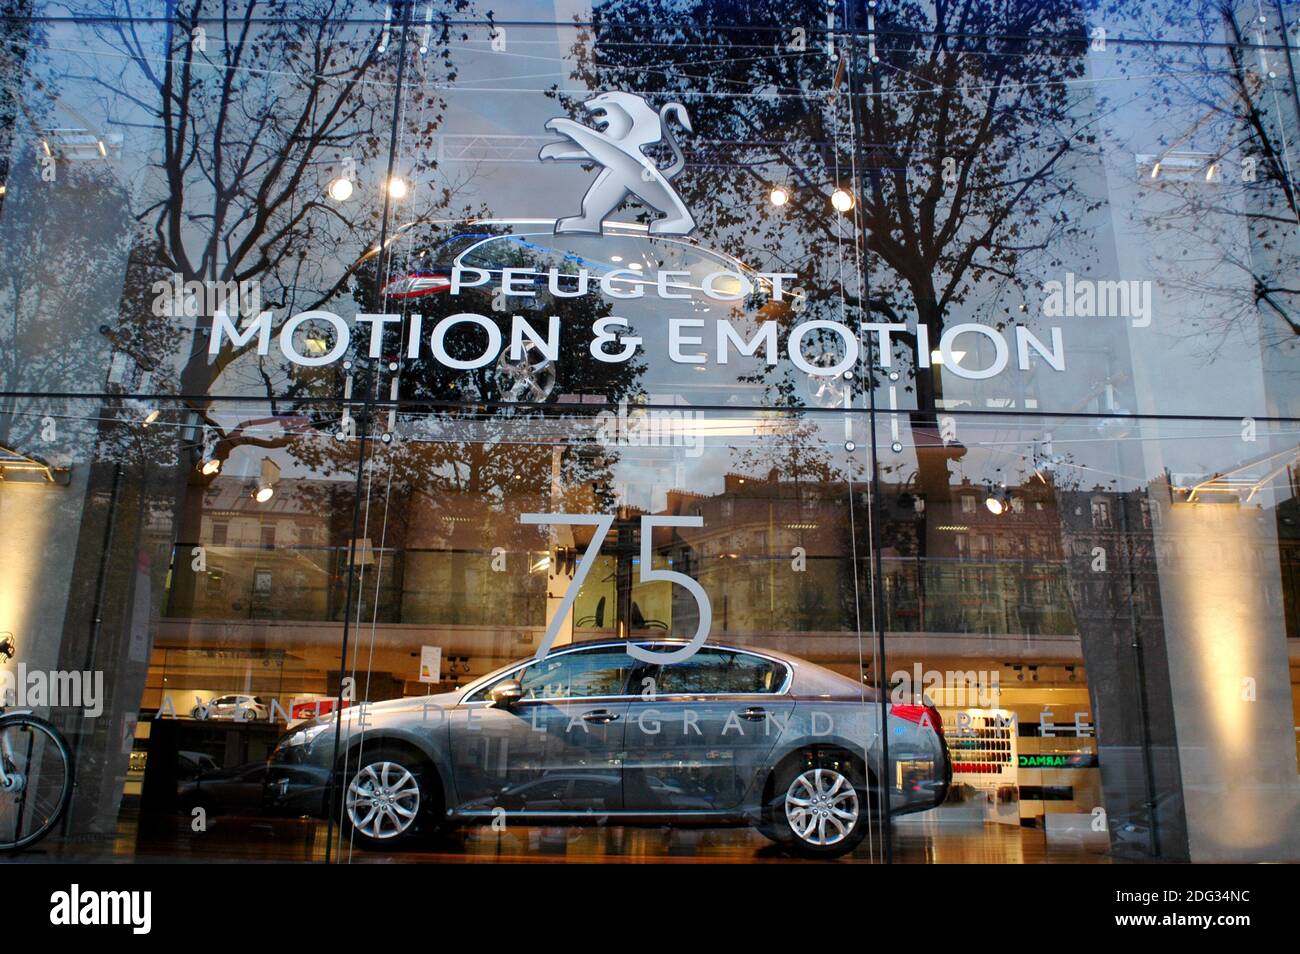 Foto de archivo - Ilustración de PSA Peugeot Citroen en París, Francia, el 18 de noviembre de 2011. La empresa francesa propietaria de Peugeot y Citroen ha logrado un acuerdo de 2.200mn de euros para comprar la unidad europea de General Motors, incluyendo Vauxhall. GM Europa no ha obtenido beneficios desde 1999 y el acuerdo ha generado temores sobre la pérdida de puestos de trabajo en Vauxhall. Con las operaciones de GM Opel y Vauxhall, PSA Group se convertiría en el segundo fabricante de automóviles más grande de Europa, detrás de Volkswagen. Foto de Alain Apaydin/ABACAPRESS.COM Foto de stock